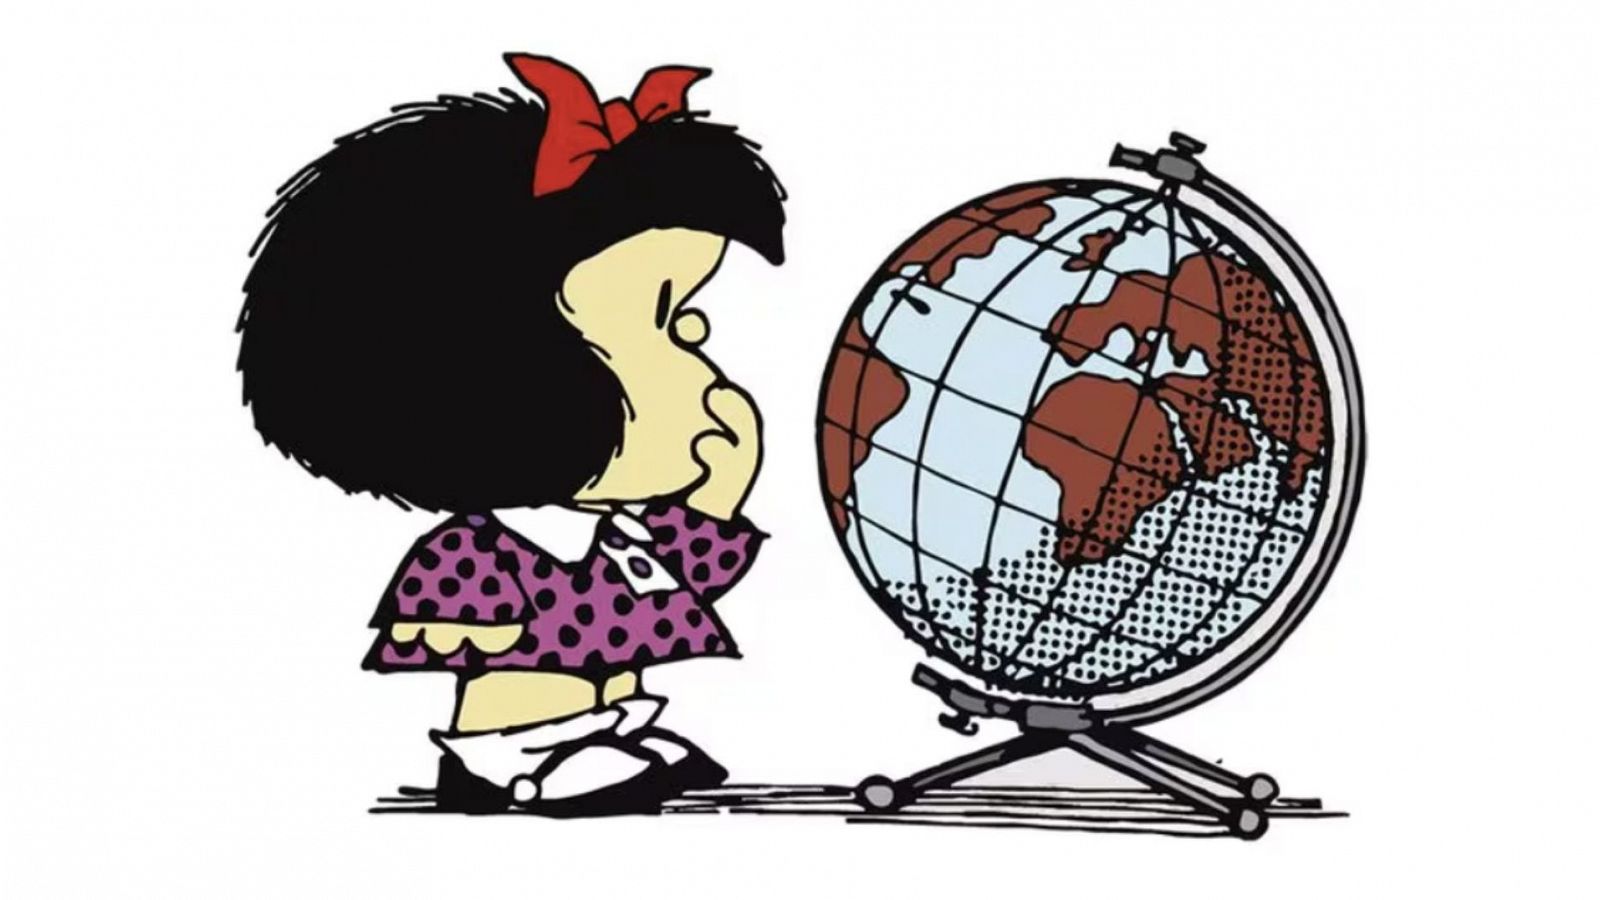 Página Dos - La Mafalda de Quino cumple 60 años en la prensa